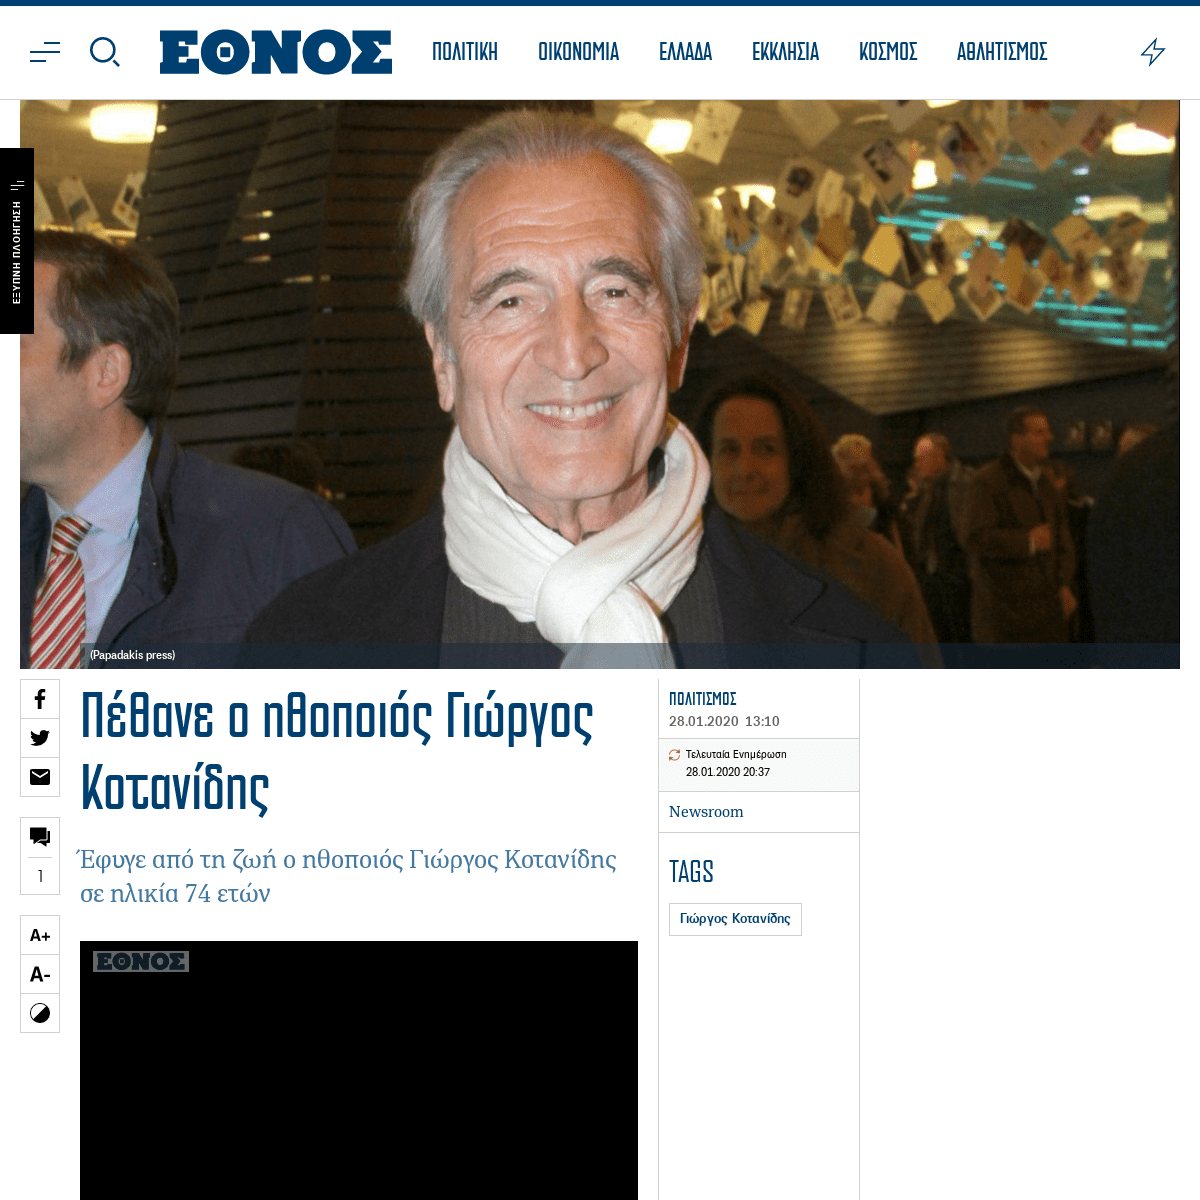 A complete backup of www.ethnos.gr/politismos/85219_pethane-o-ithopoios-giorgos-kotanidis